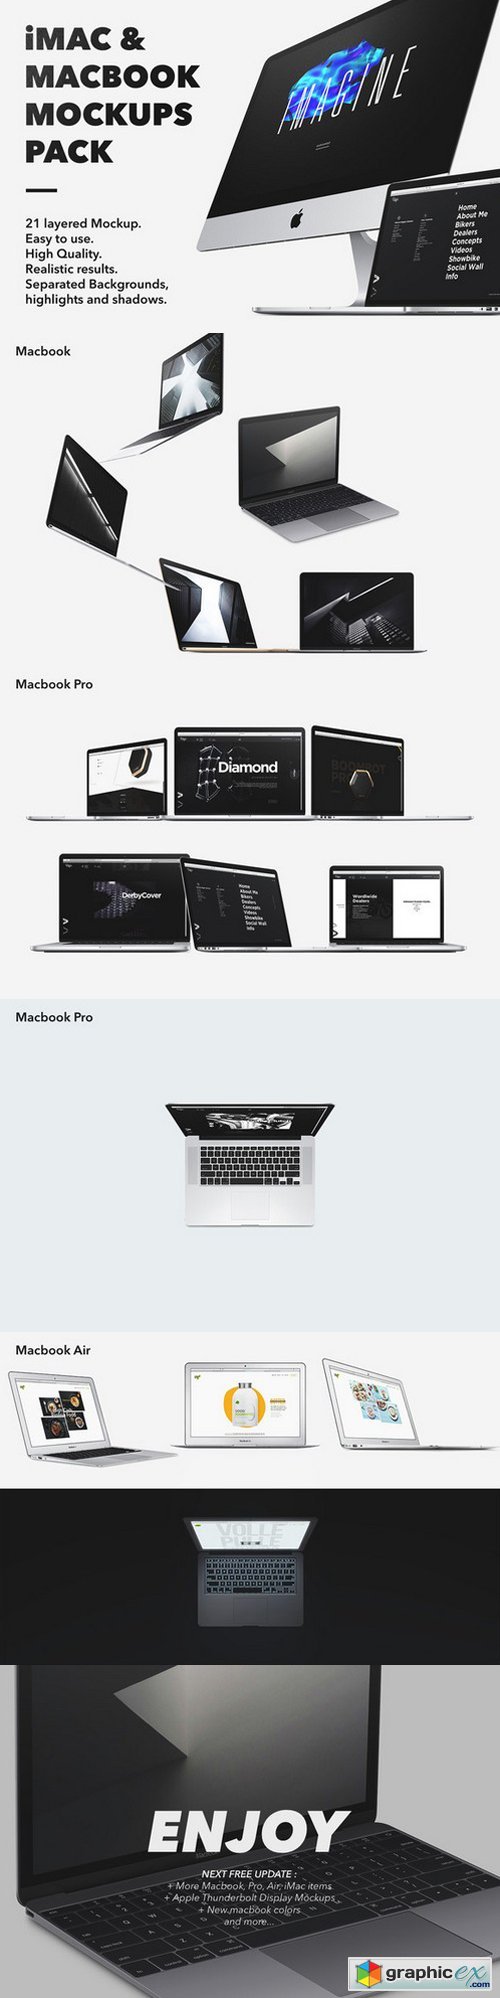 iMac & Macbook Mockups pack